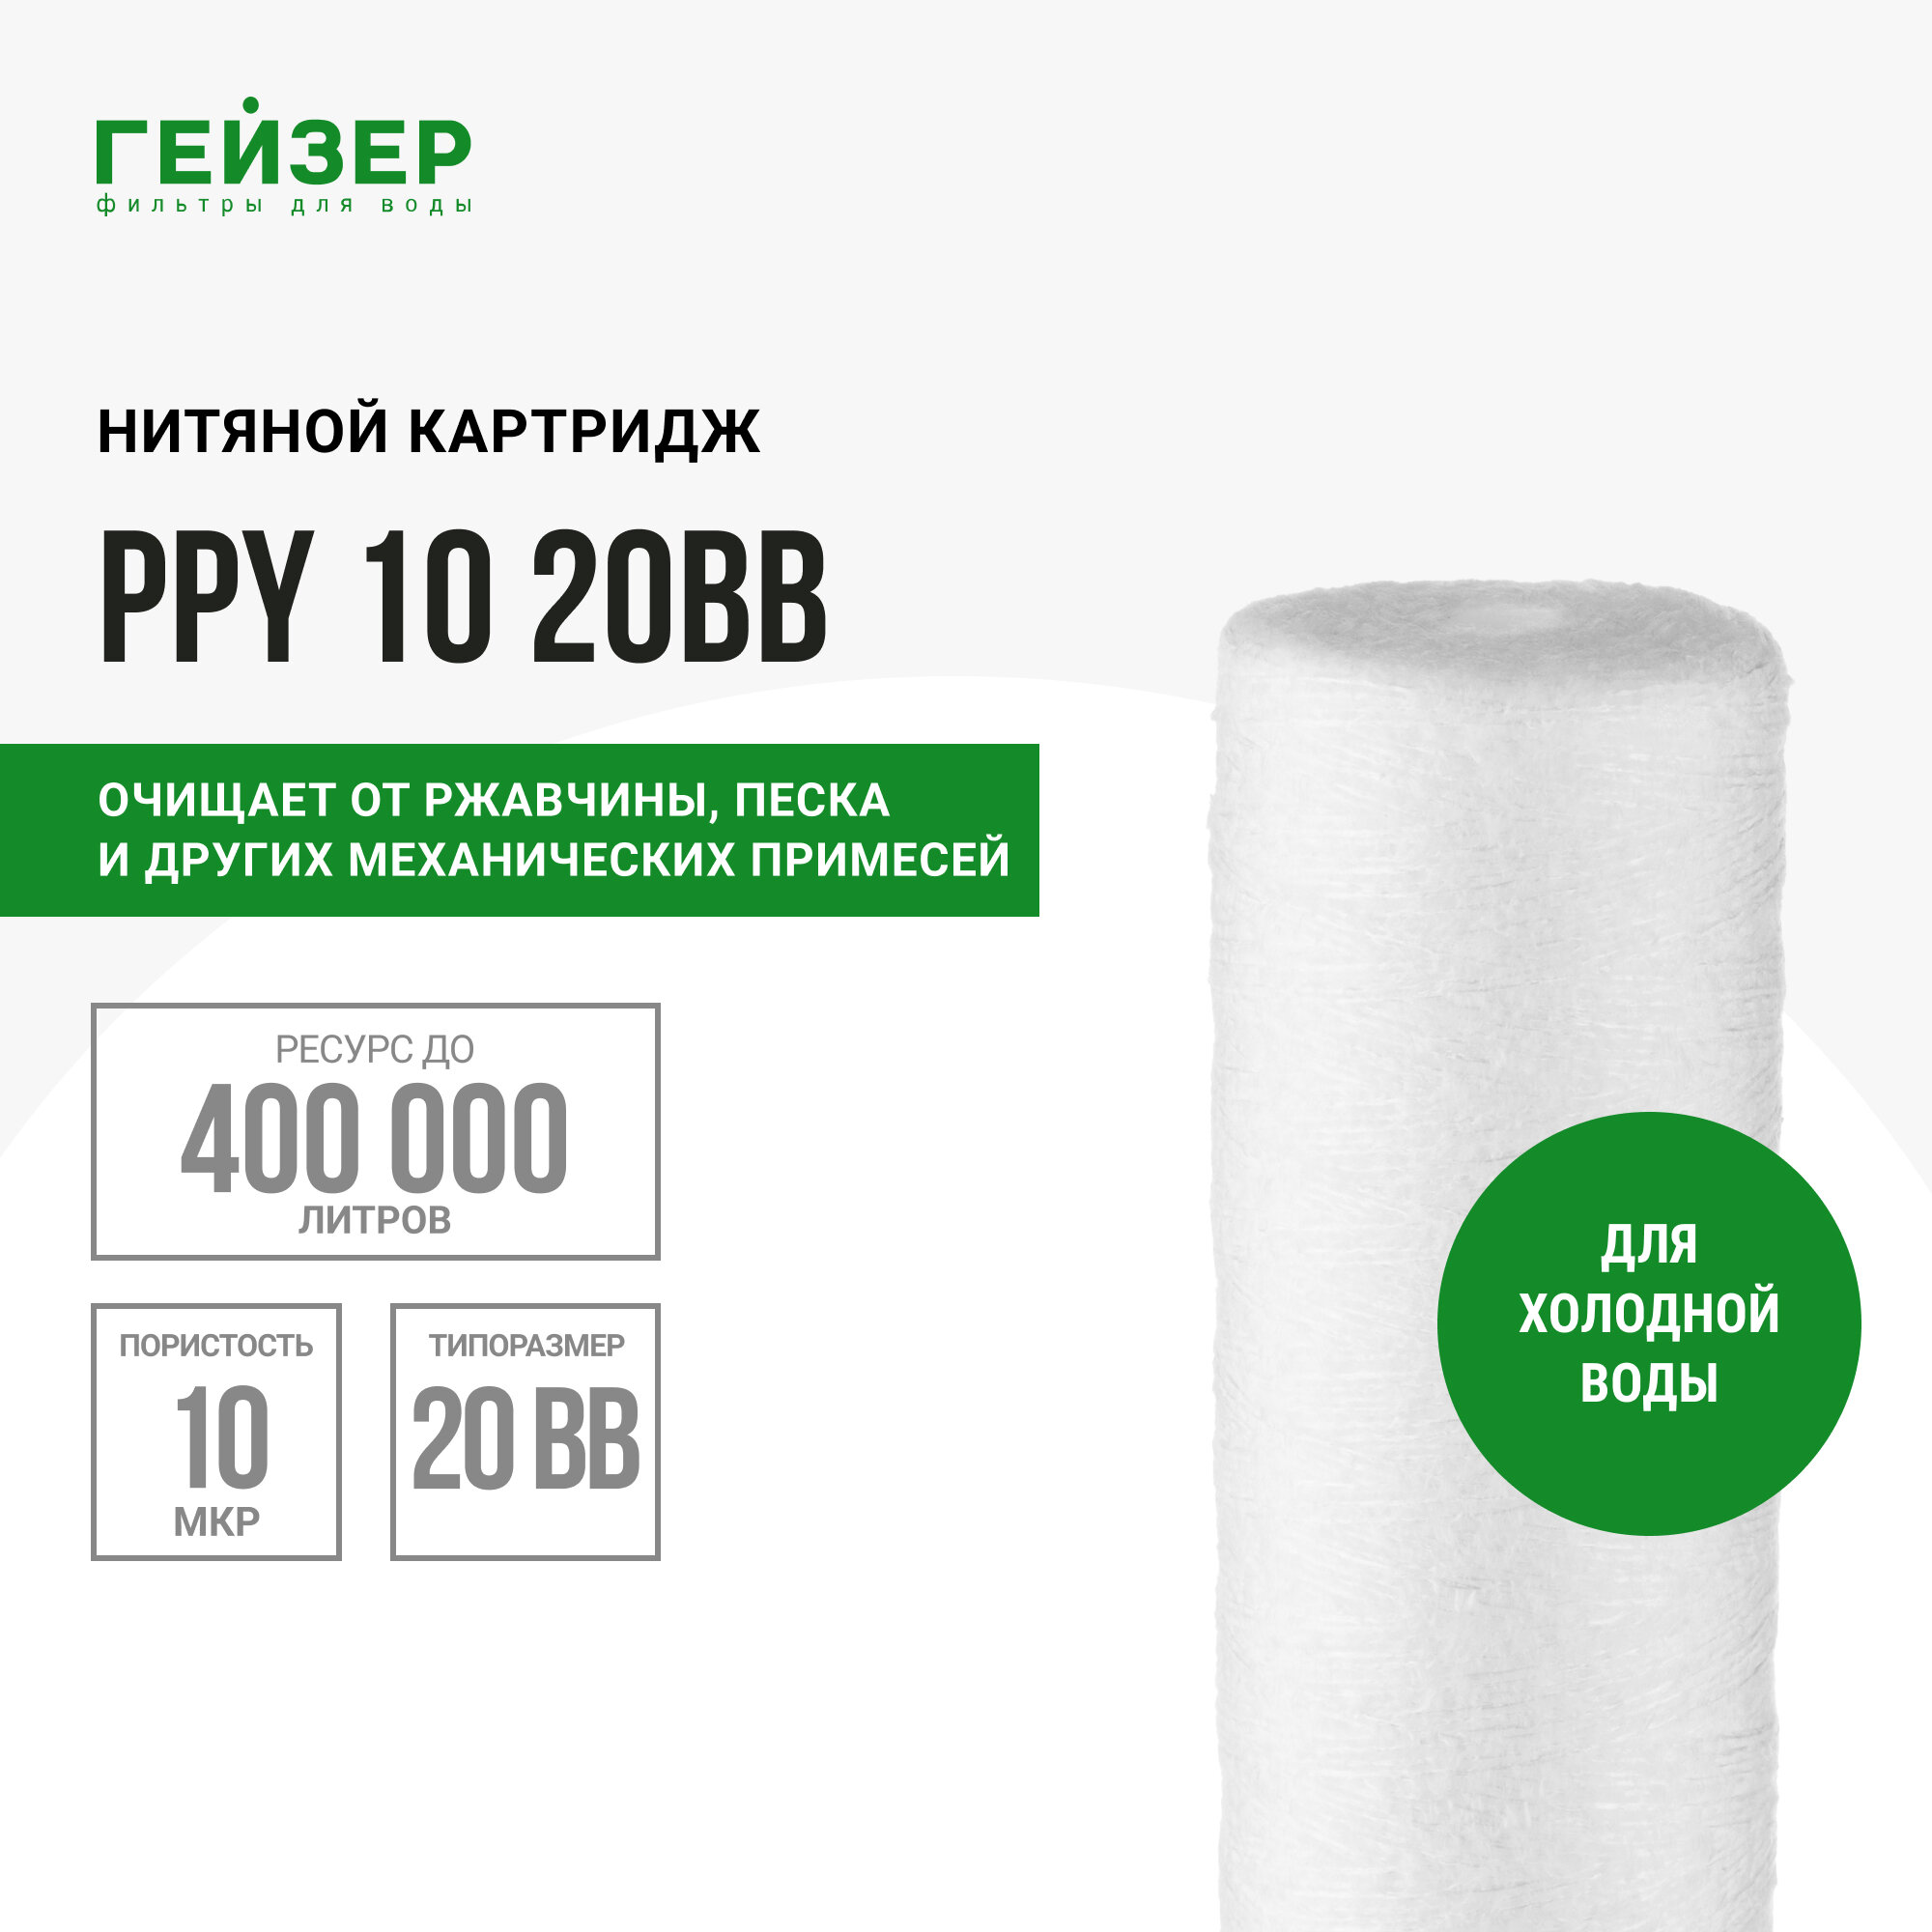 Полипропиленовый картридж механической очисткиГейзер PPY 10 для холодной воды - 20BB, 28058 - 1 шт.